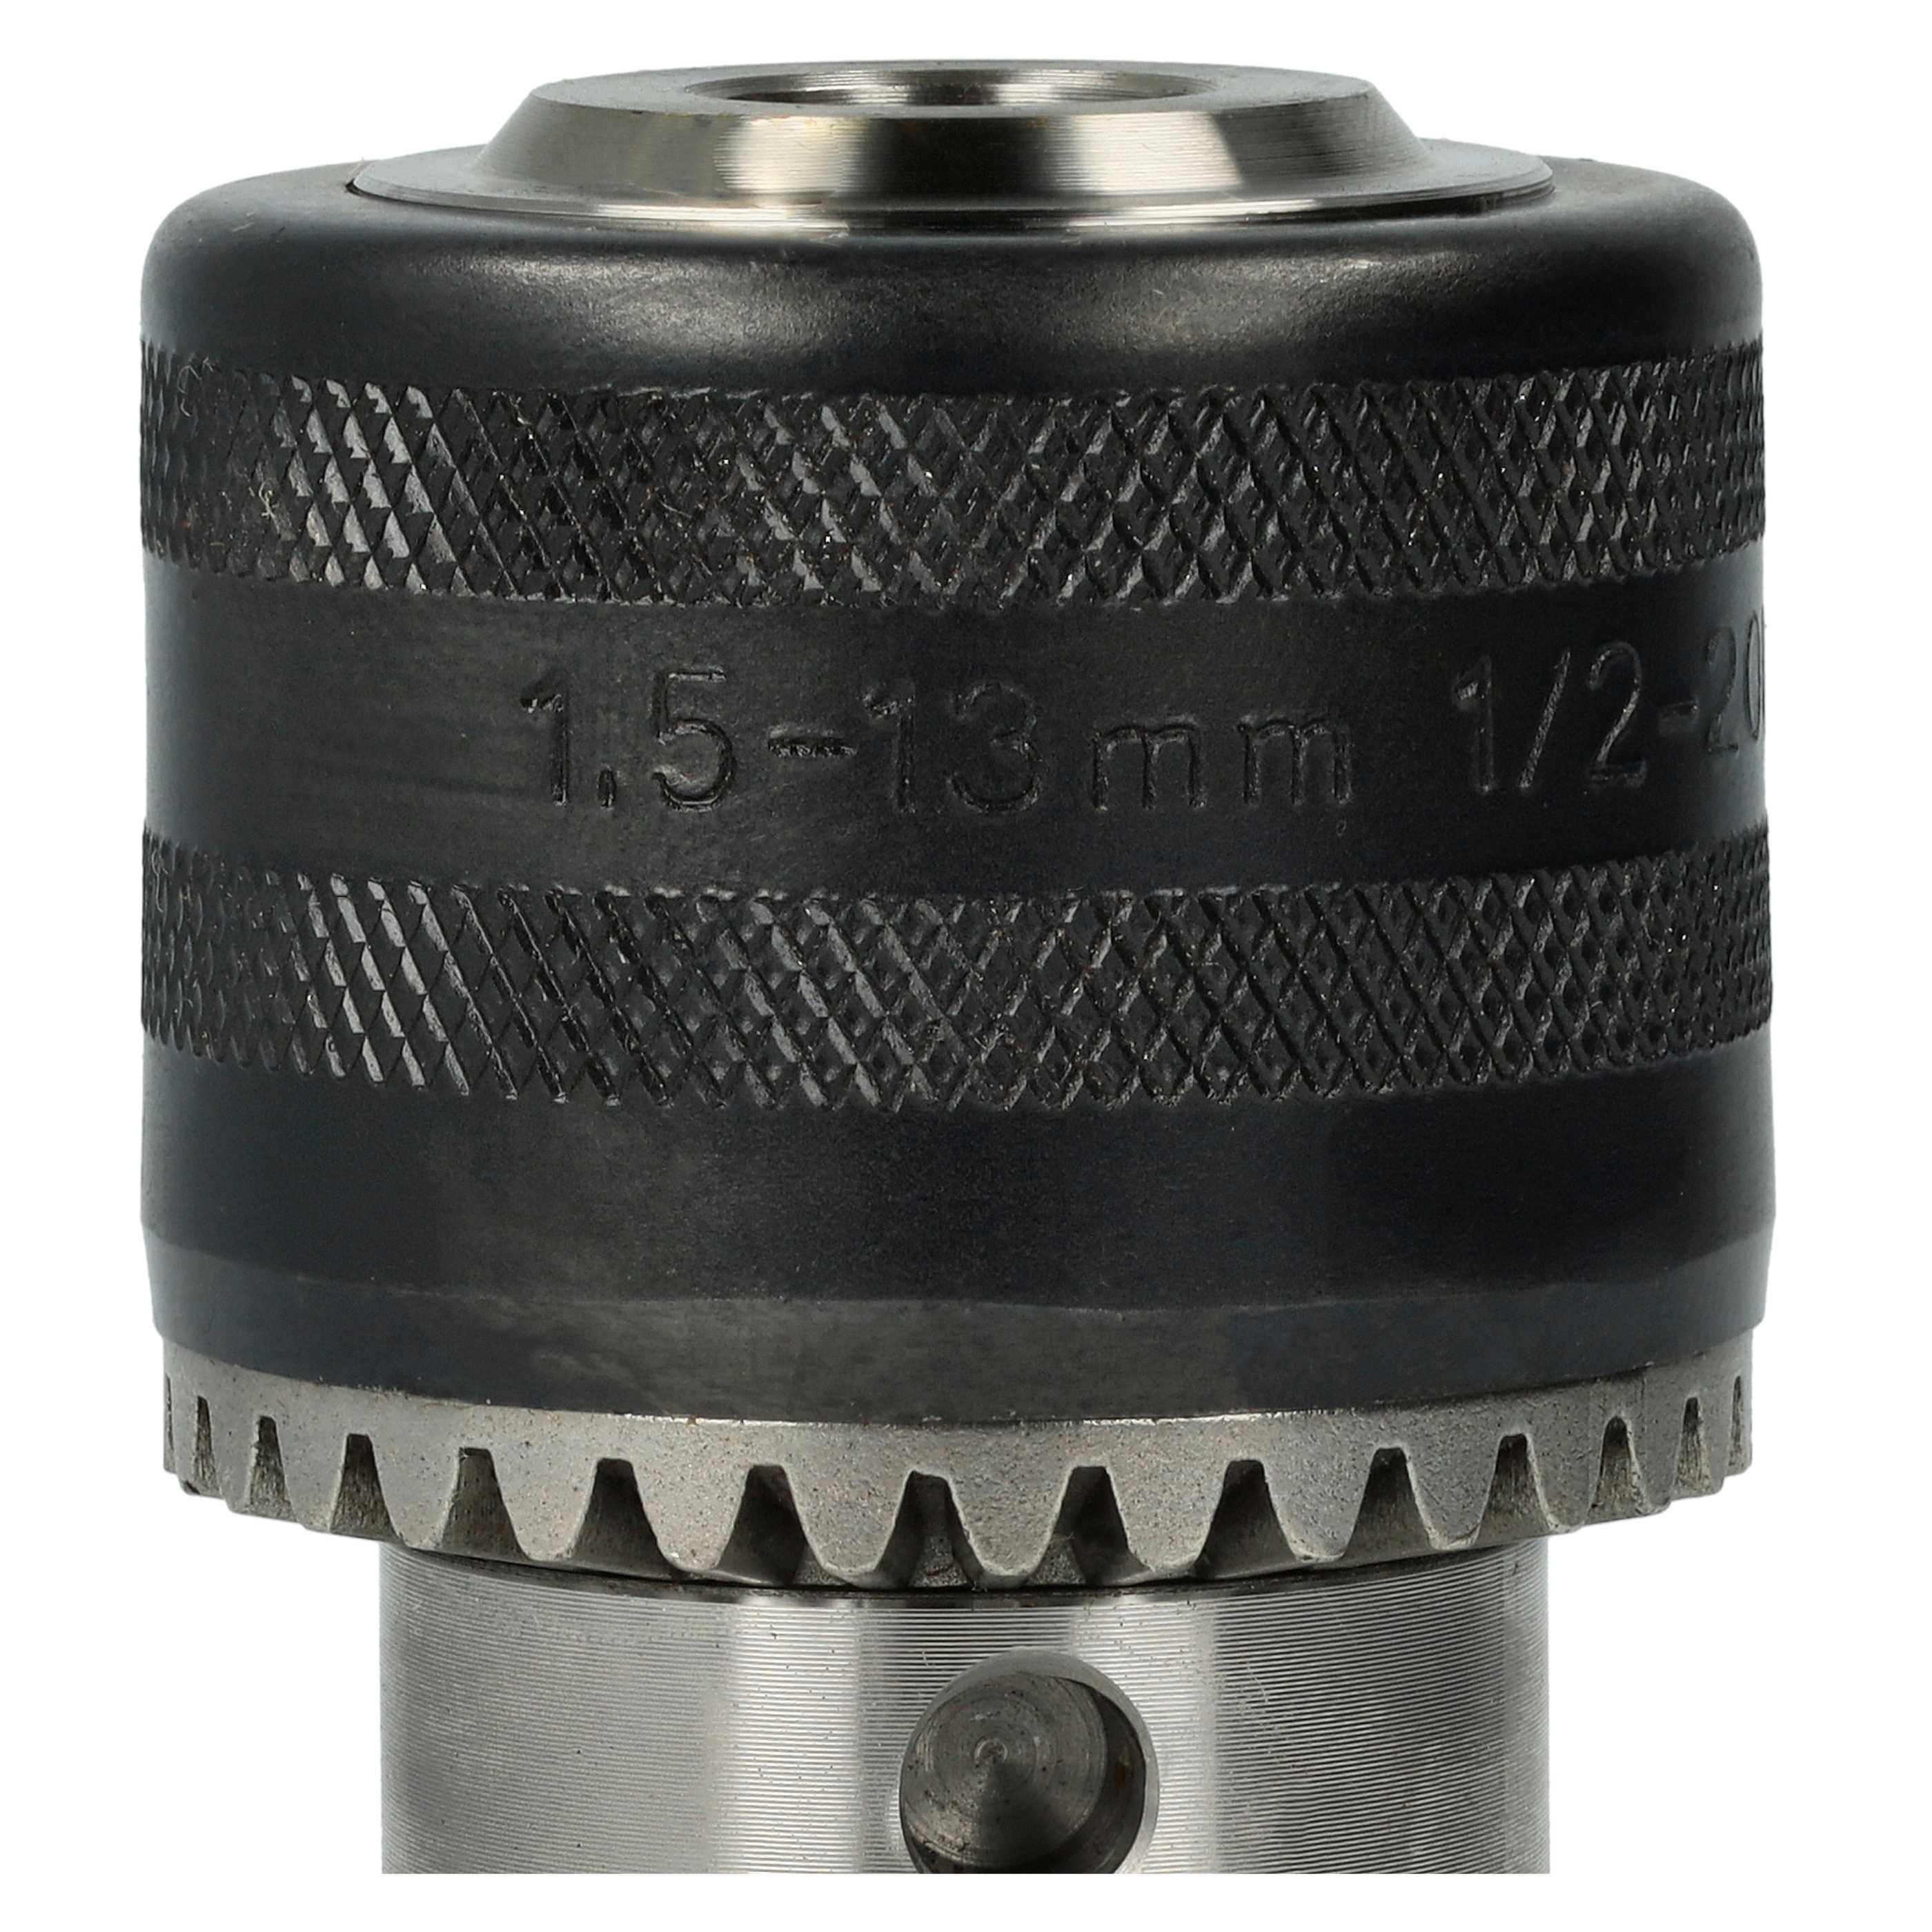 Portabrocas de corona dentada con llave para taladro inalámbrico - 1,5 - 13mm - 13mm (1/2") x 20